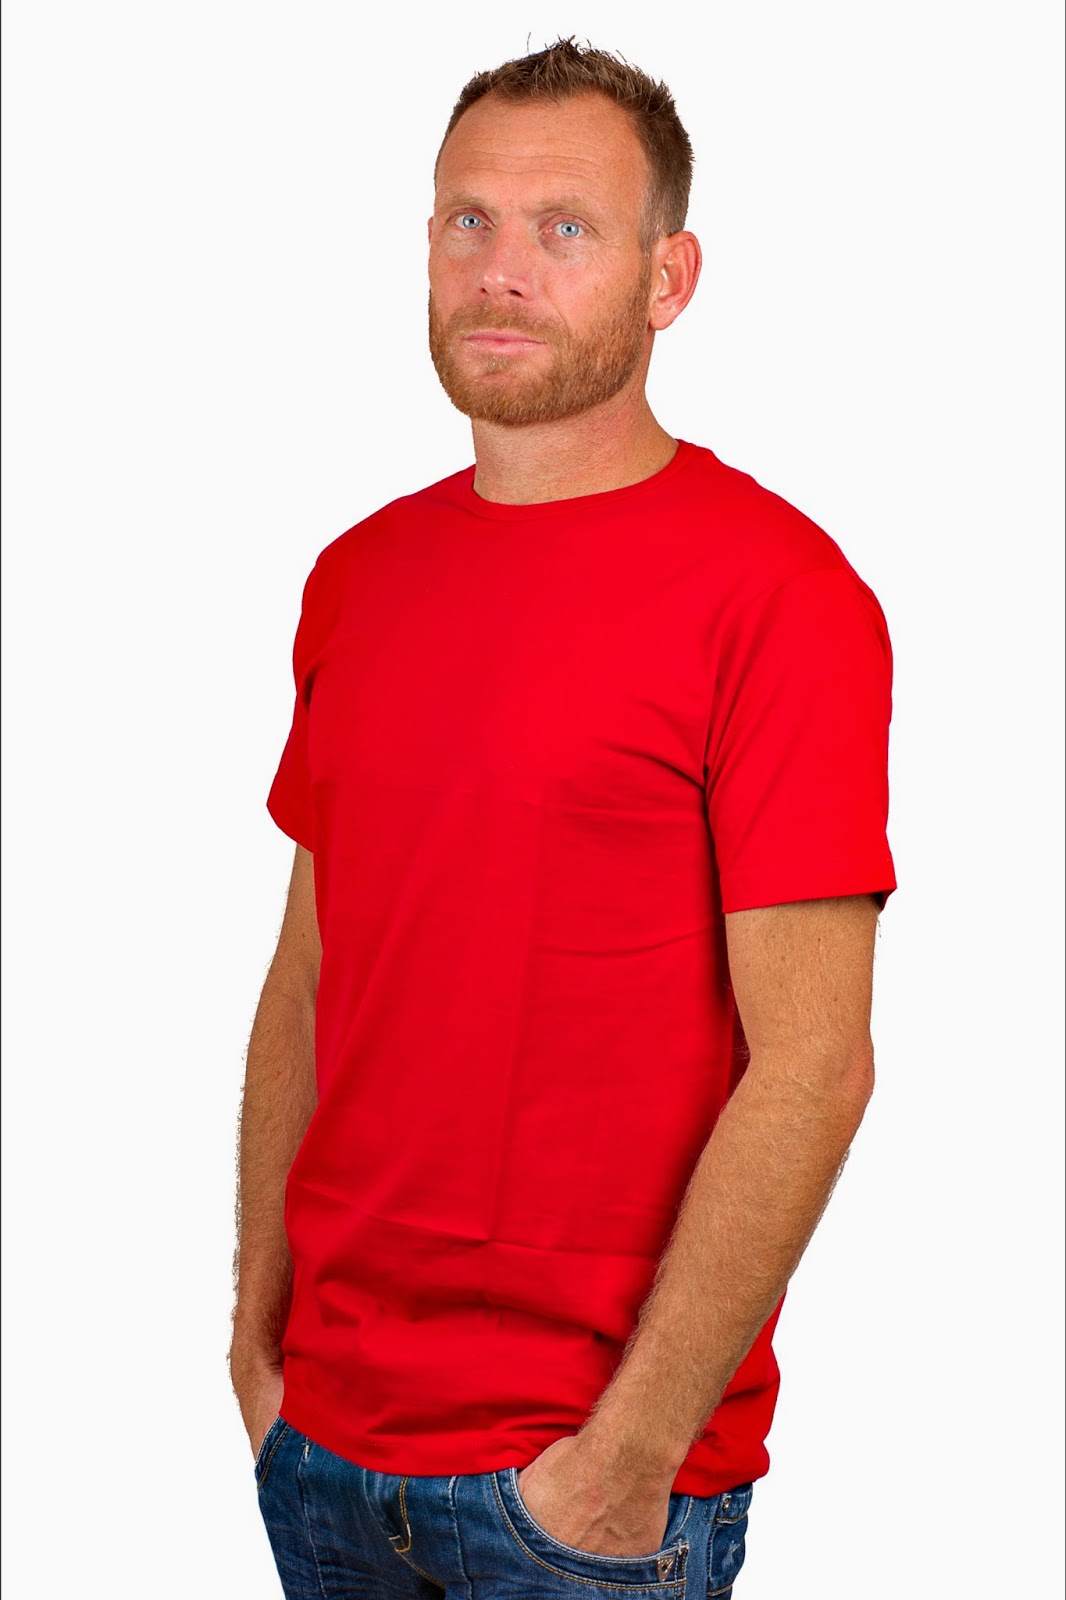 Denk vooruit Defecte verkoudheid Basic Mode and Jeans Webshop Emmen Blog: Alan Red T-Shirts bij Basic Mode  Webshop